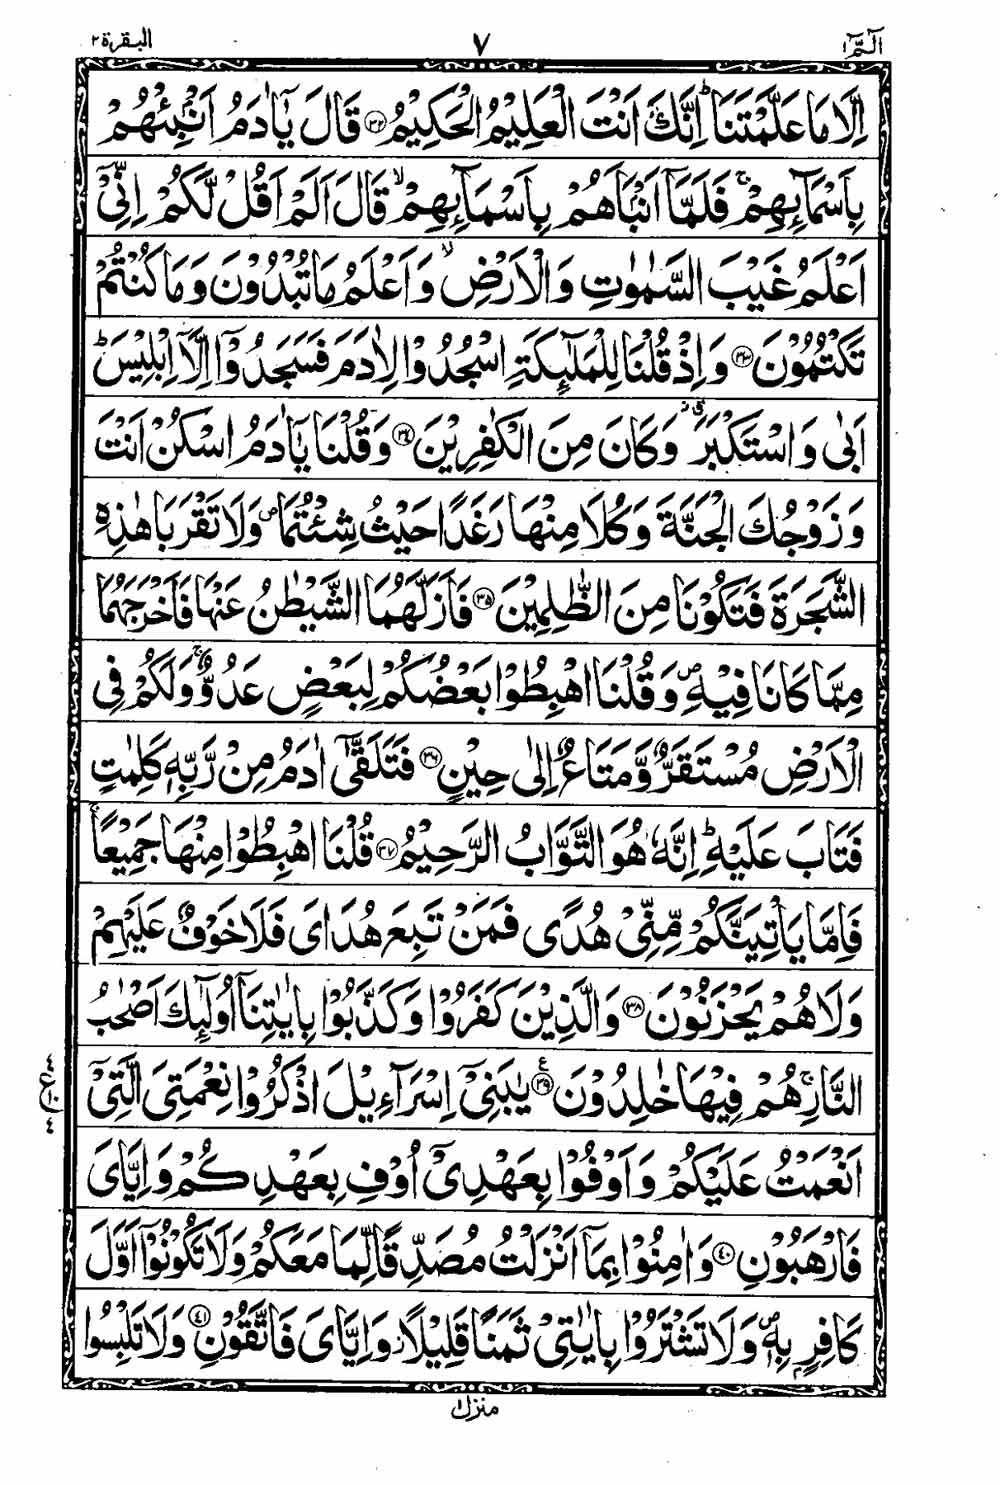 Read 16 Lines Al Quran Taj Company Part 1 Page No 8, Practice Quran